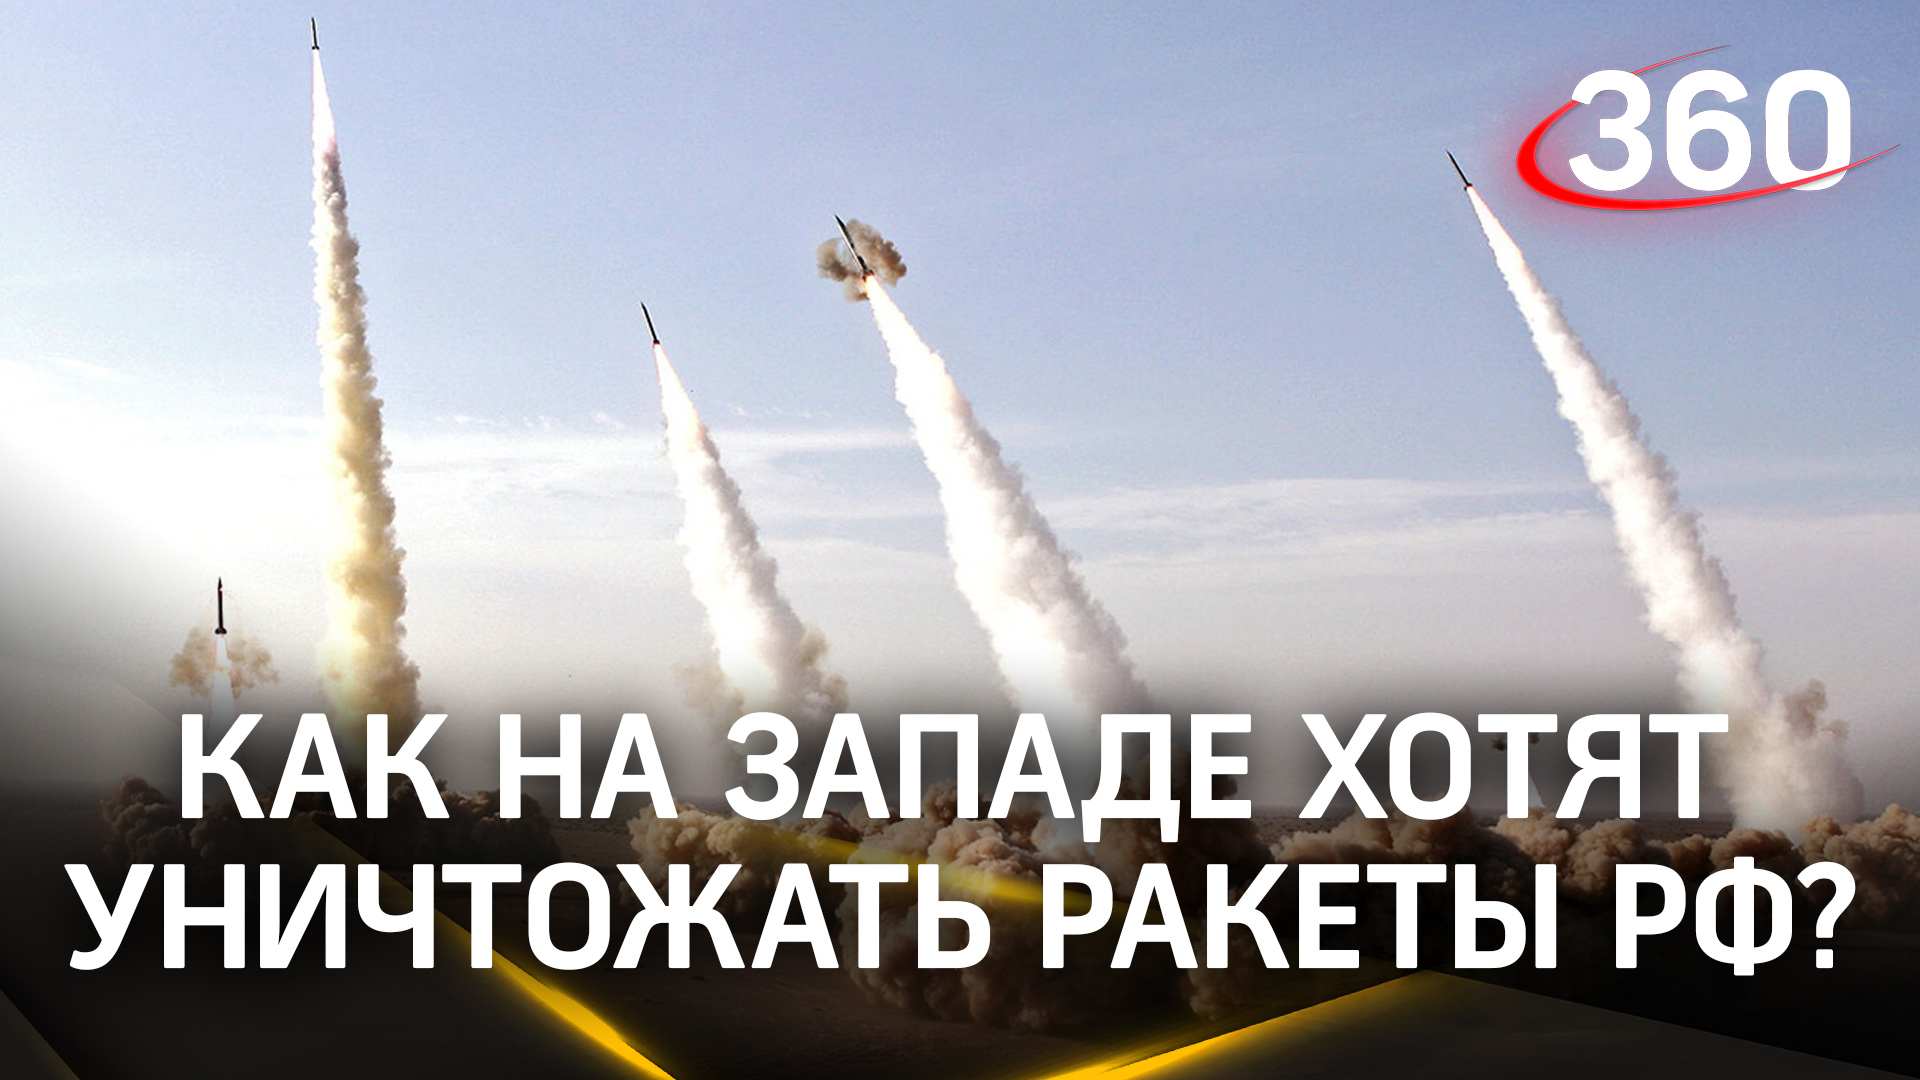 НАТО хотят сбивать российские ракеты над Украиной?